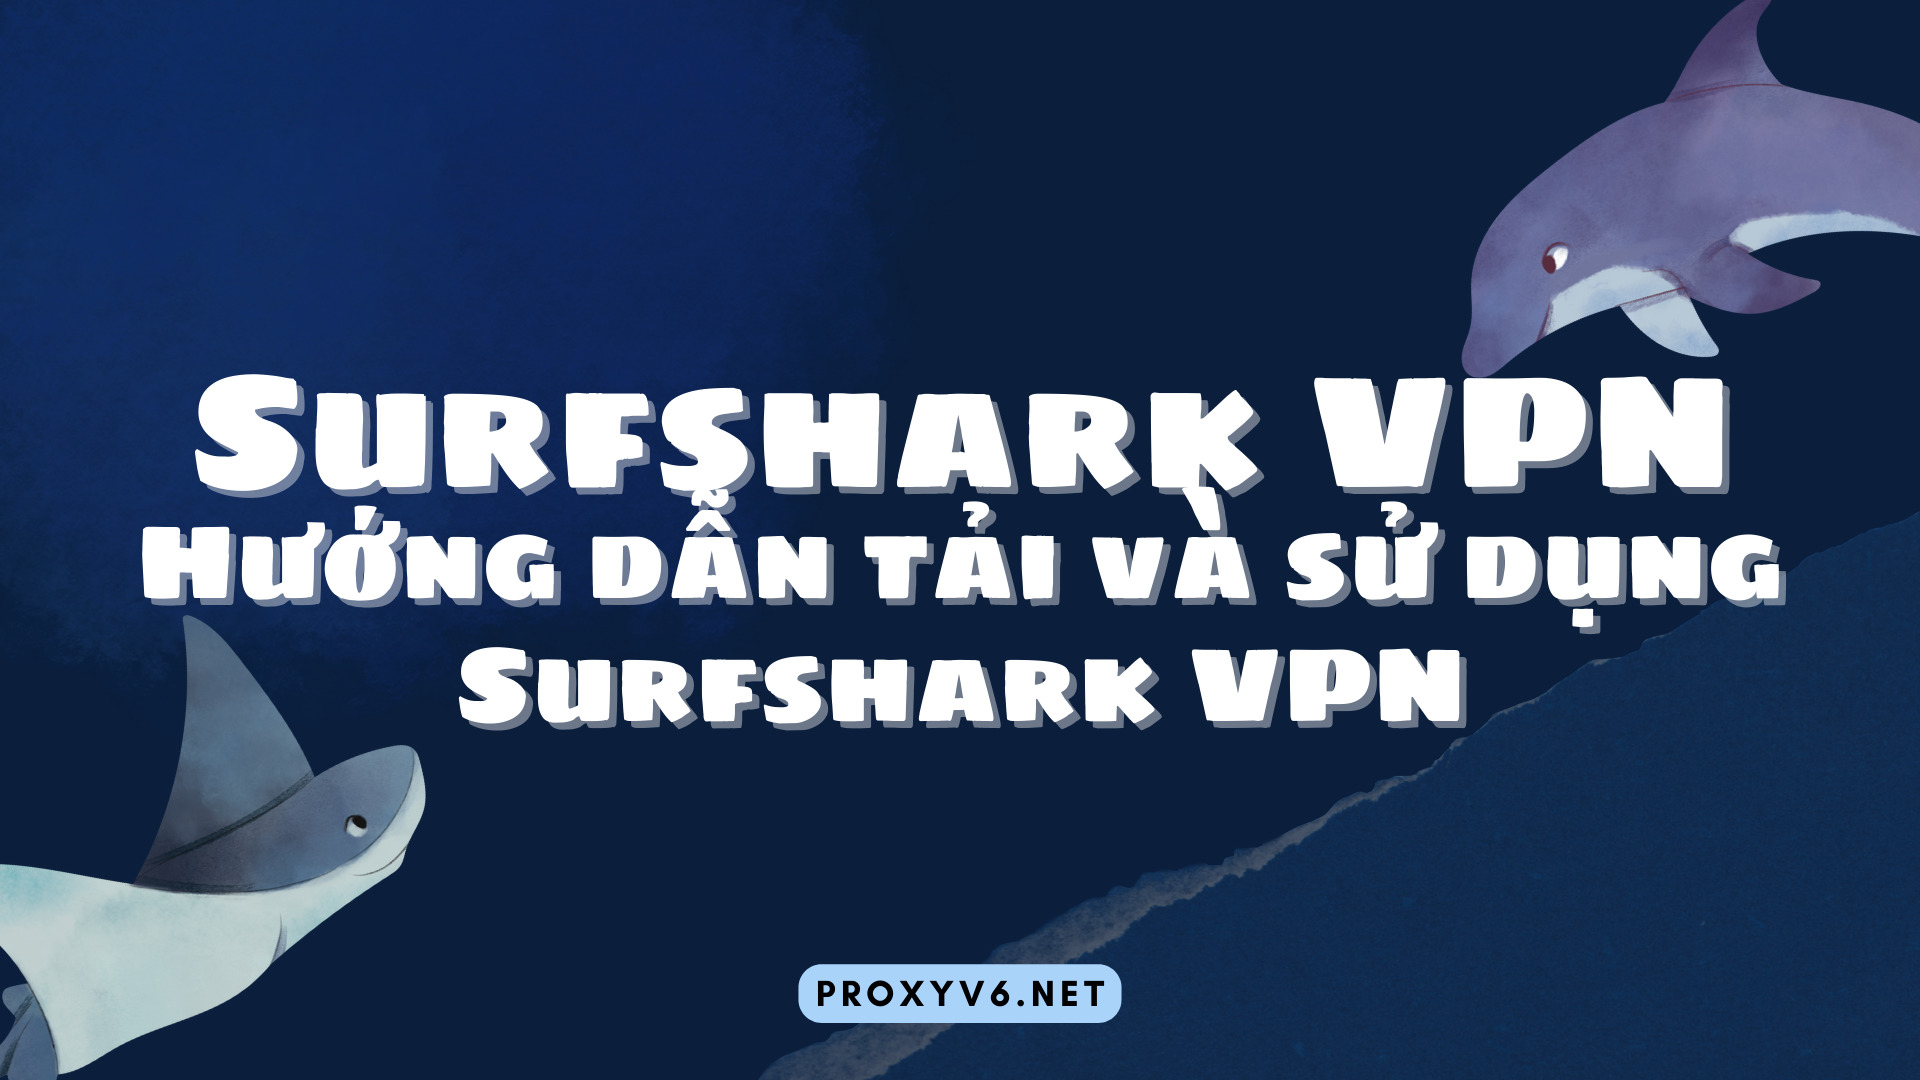 Surfshark VPN - Hướng dẫn tải và sử dụng Surfshark VPN